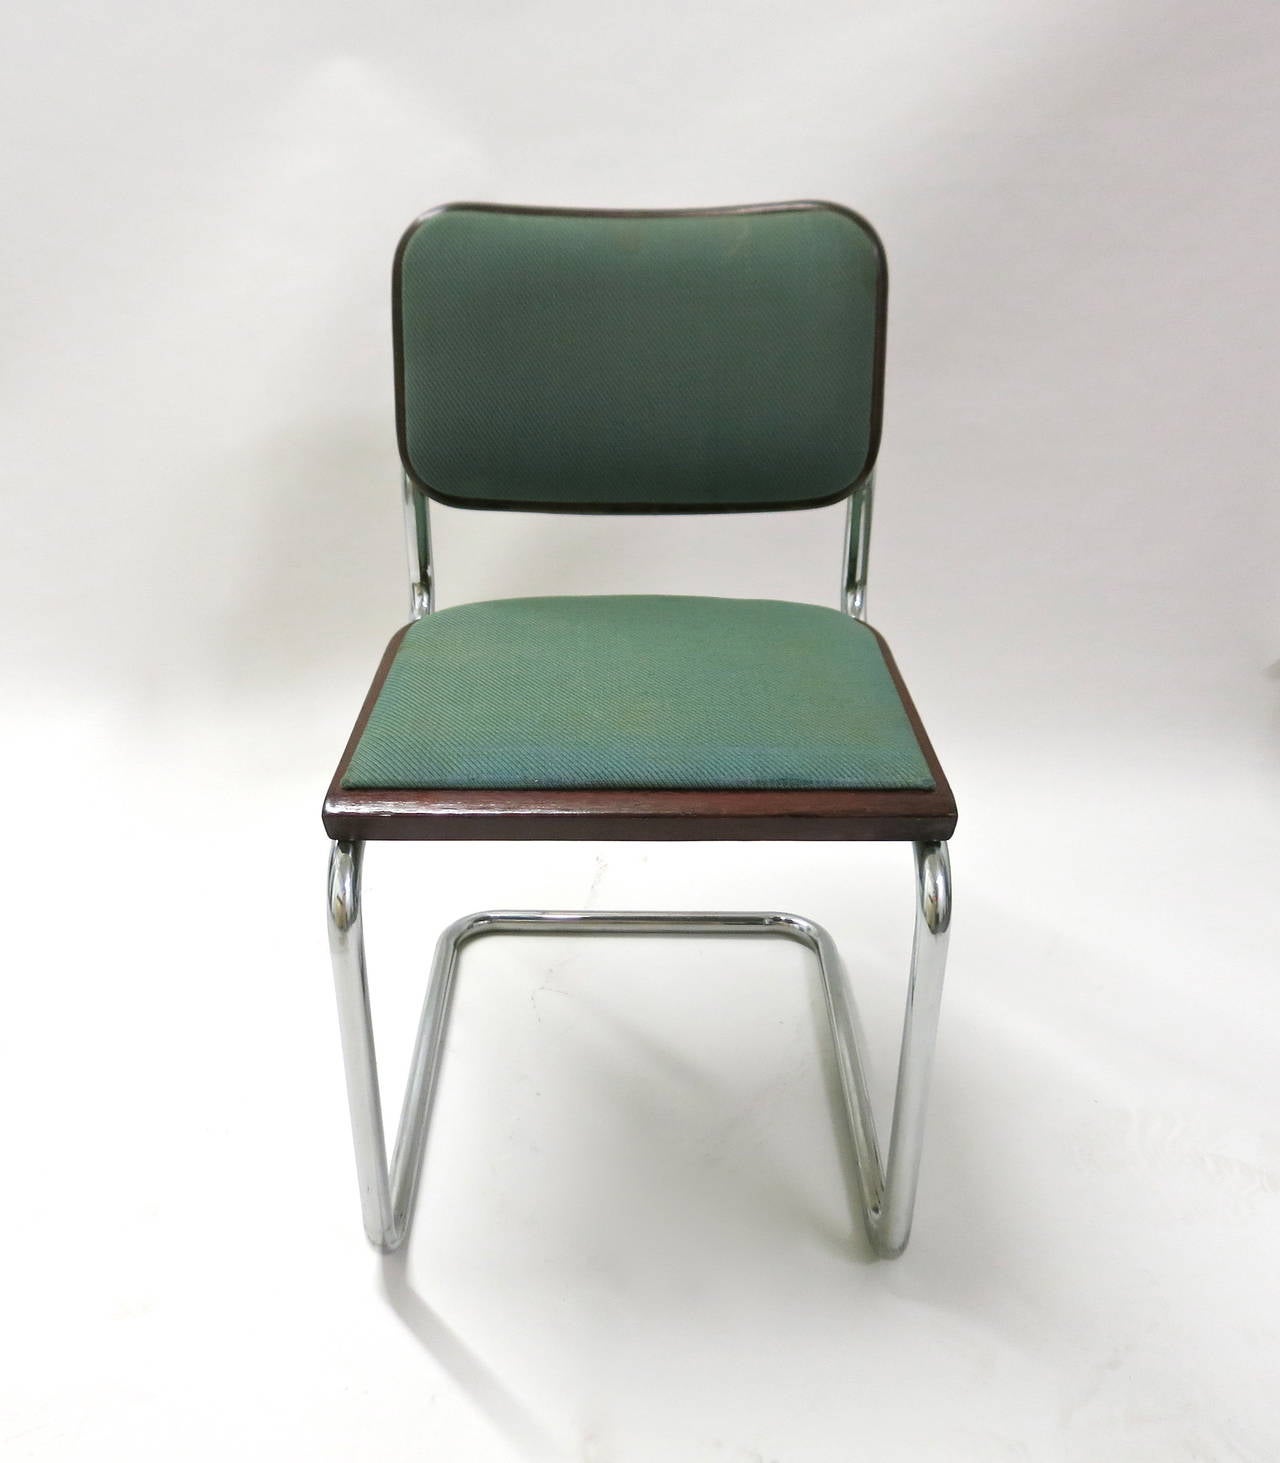 Über 100 signierte und datierte Cesca-Stühle mit Holzrahmen und gepolsterten Sitzen verfügbar. Originalentwurf von Marcel Breuer aus dem Jahr 1928 für das Bauhaus. Alle Stühle wurden 1985 von Knoll International hergestellt und für die Pacific Bell